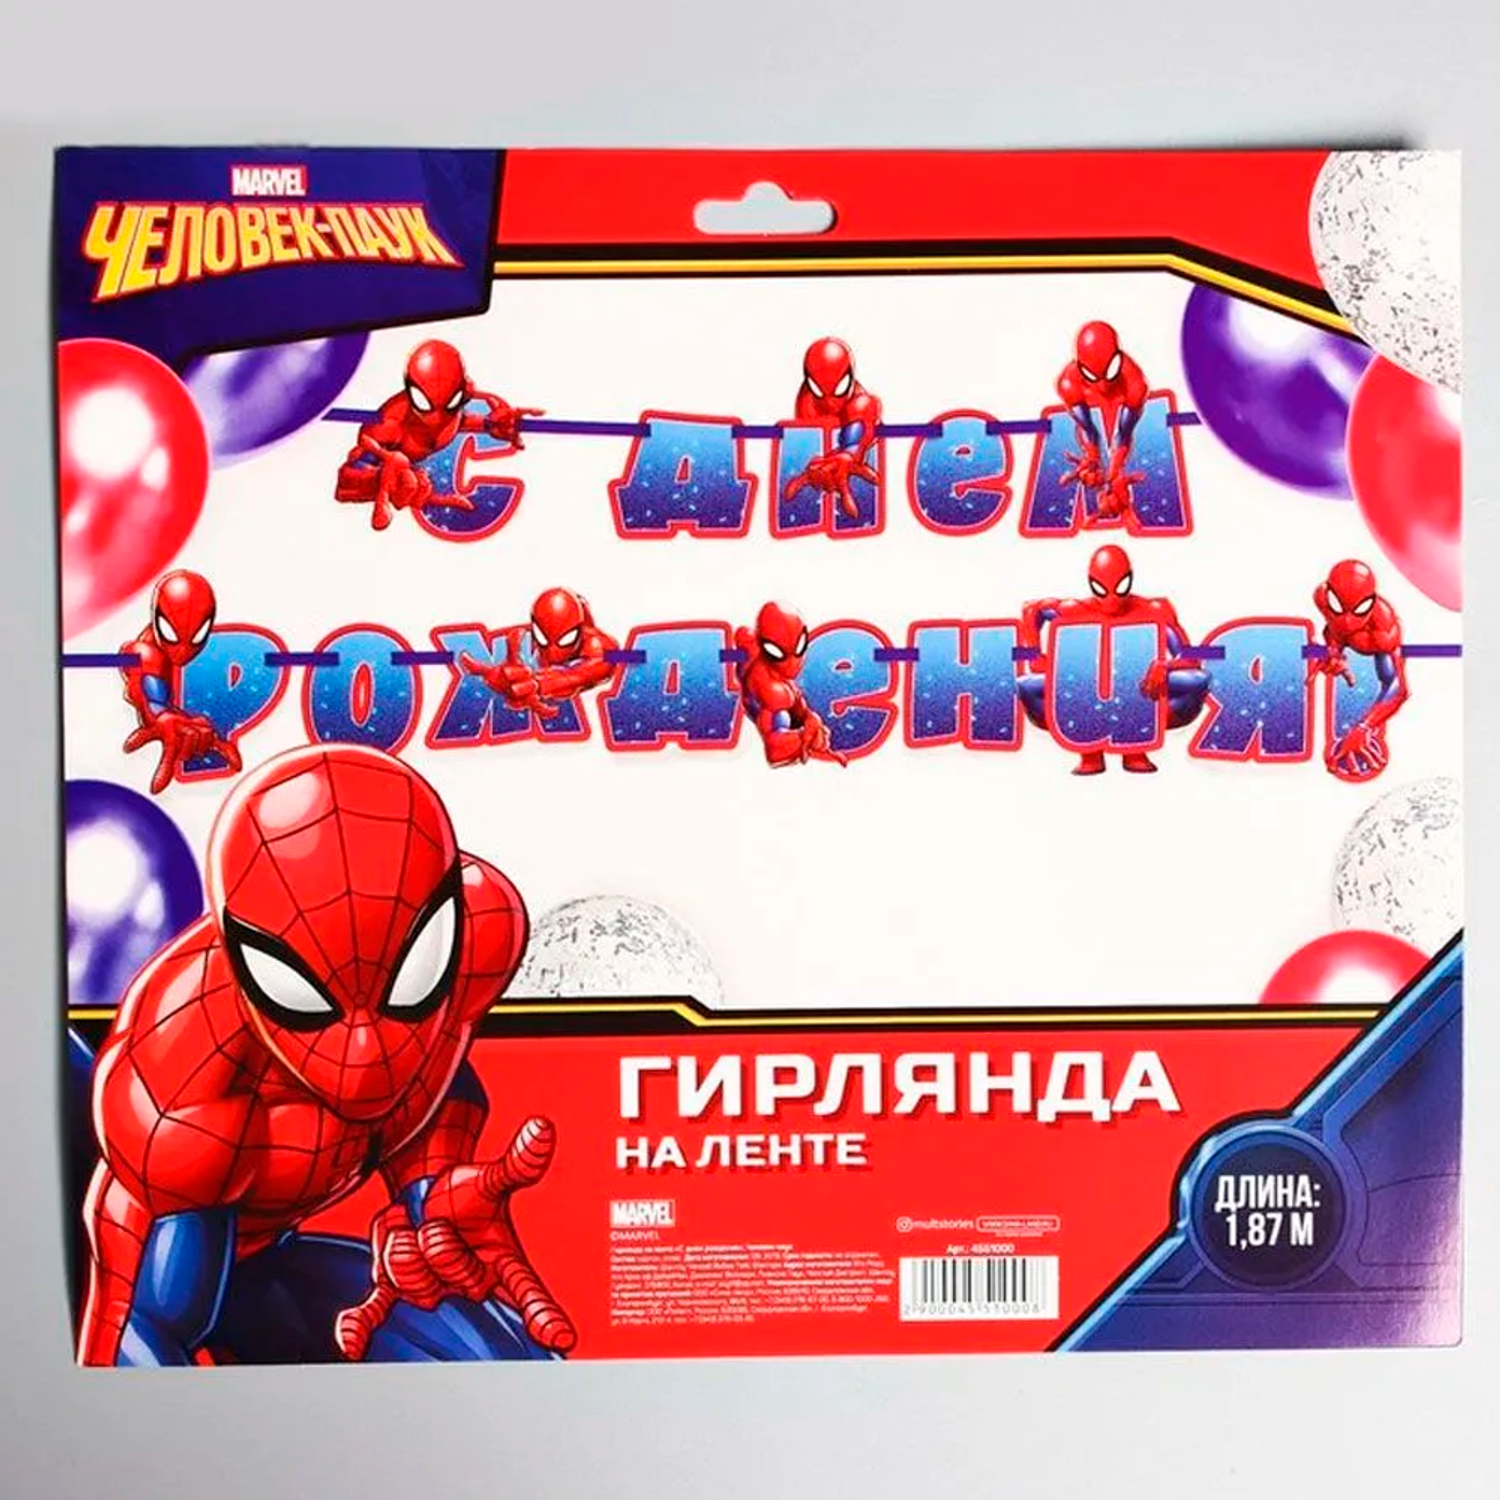 Гирлянда растяжка Marvel Человек-паук С Днём рождения 187 см - фото 4